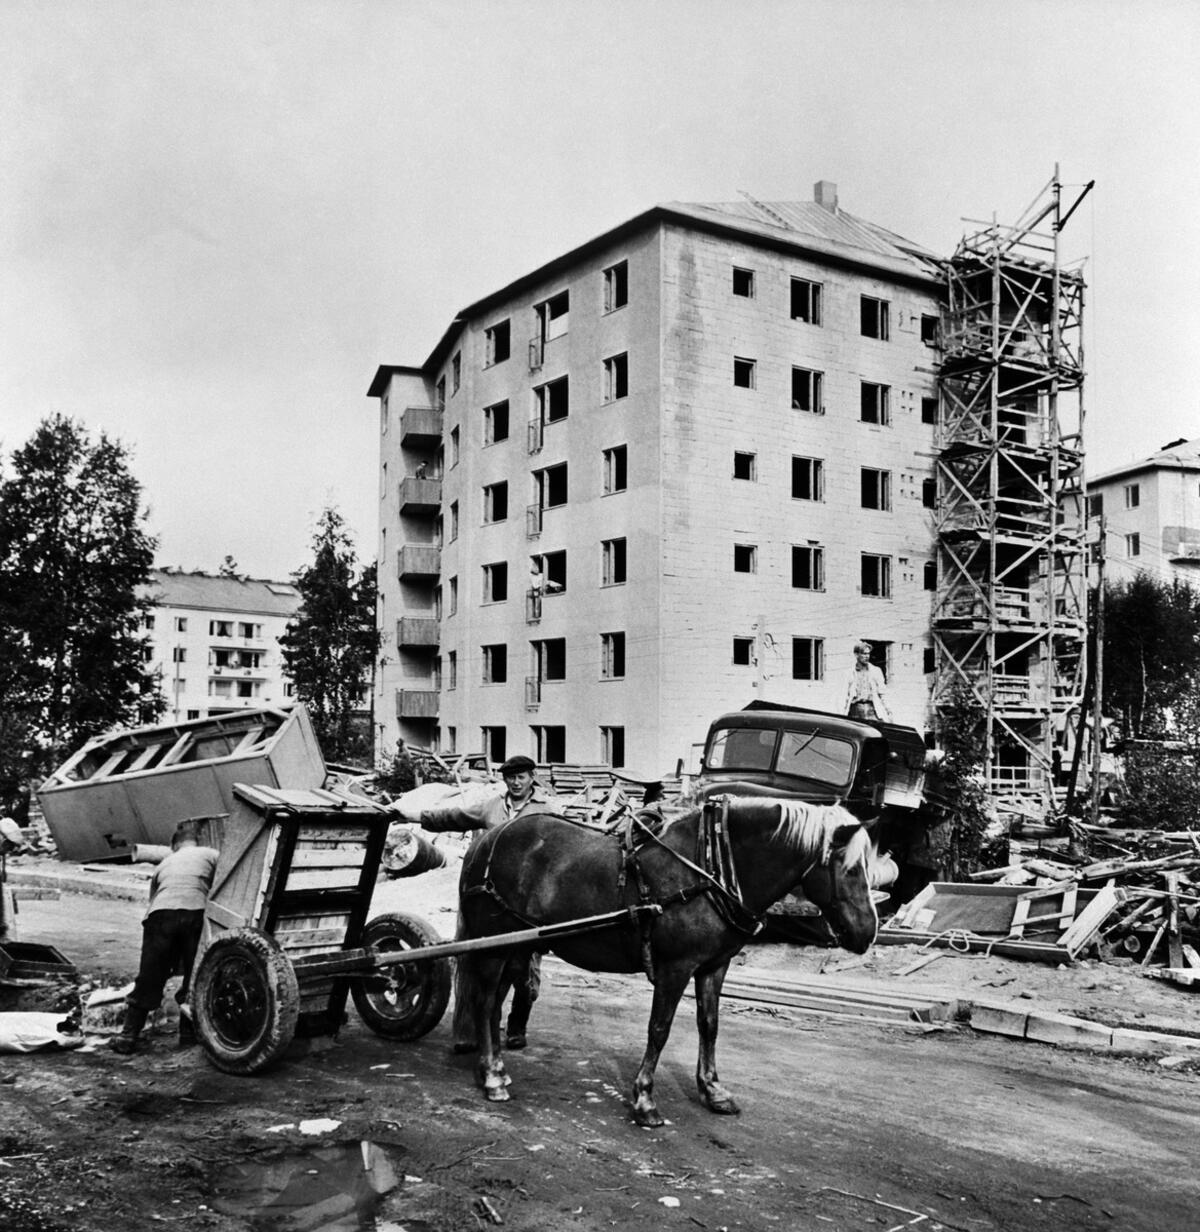 Byggarbetsplats för ett bostadshus på adressen Pietari Hannikainens väg 8 – Skådespelarvägen 4 i Norra Haga. Bilden är tagen från sydväst, till höger bostadshuset Skådespelarvägen 6 och till vänster i bakgrunden Skådespelarvägen 3. I förgrunden står en hästkärra och en arbetare.